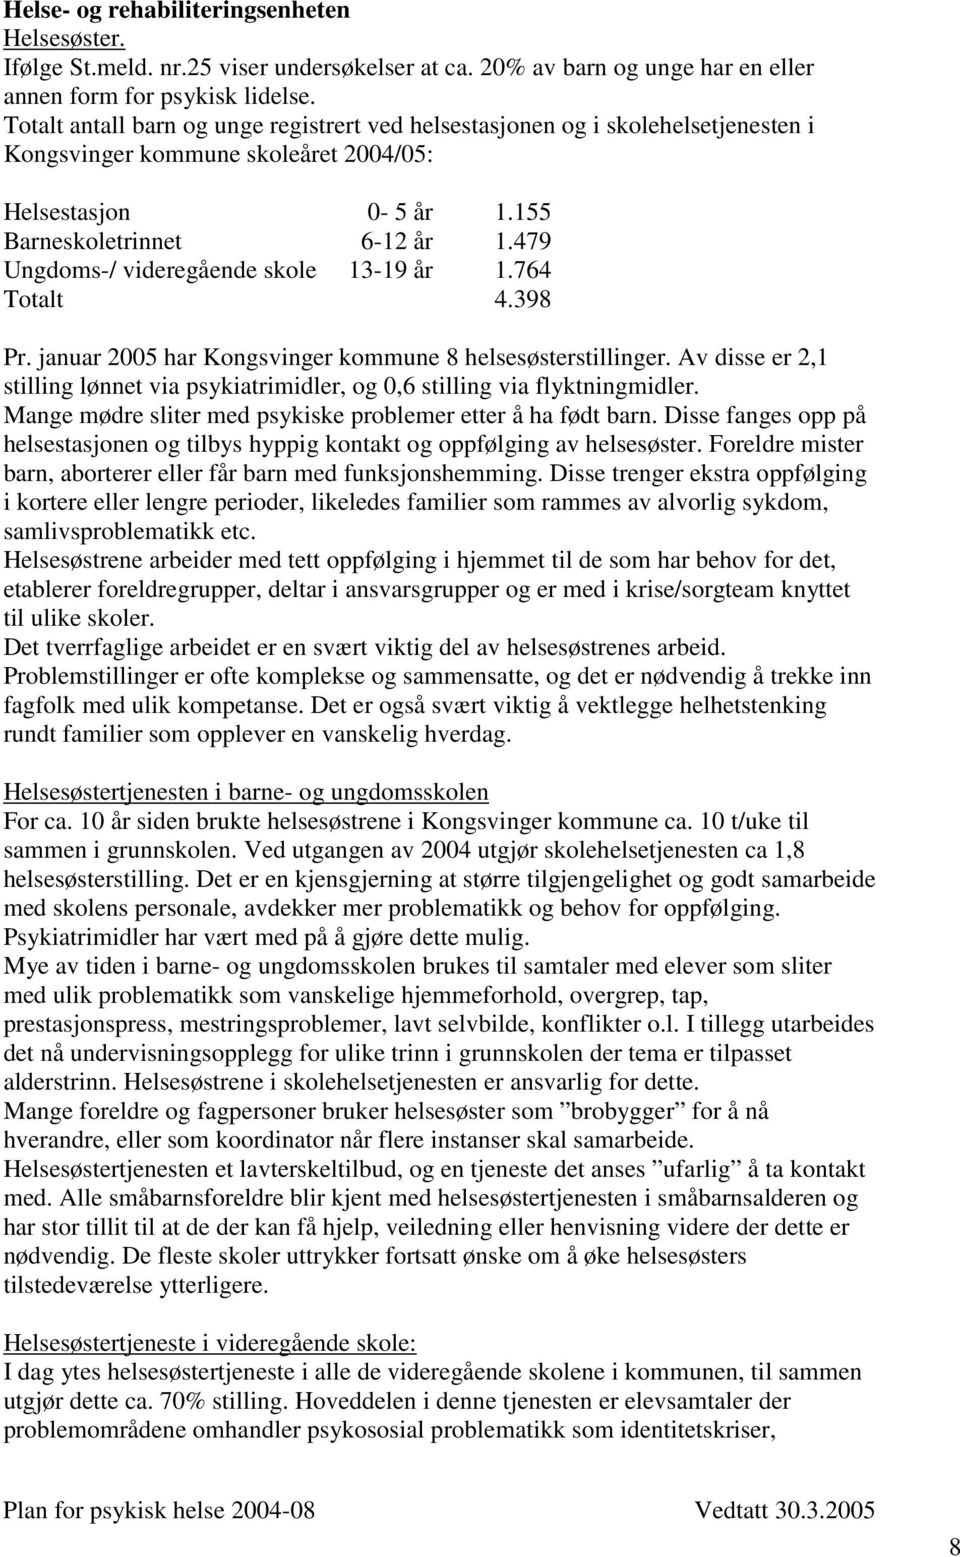 479 Ungdoms-/ videregående skole 13-19 år 1.764 Totalt 4.398 Pr. januar 2005 har Kongsvinger kommune 8 helsesøsterstillinger.